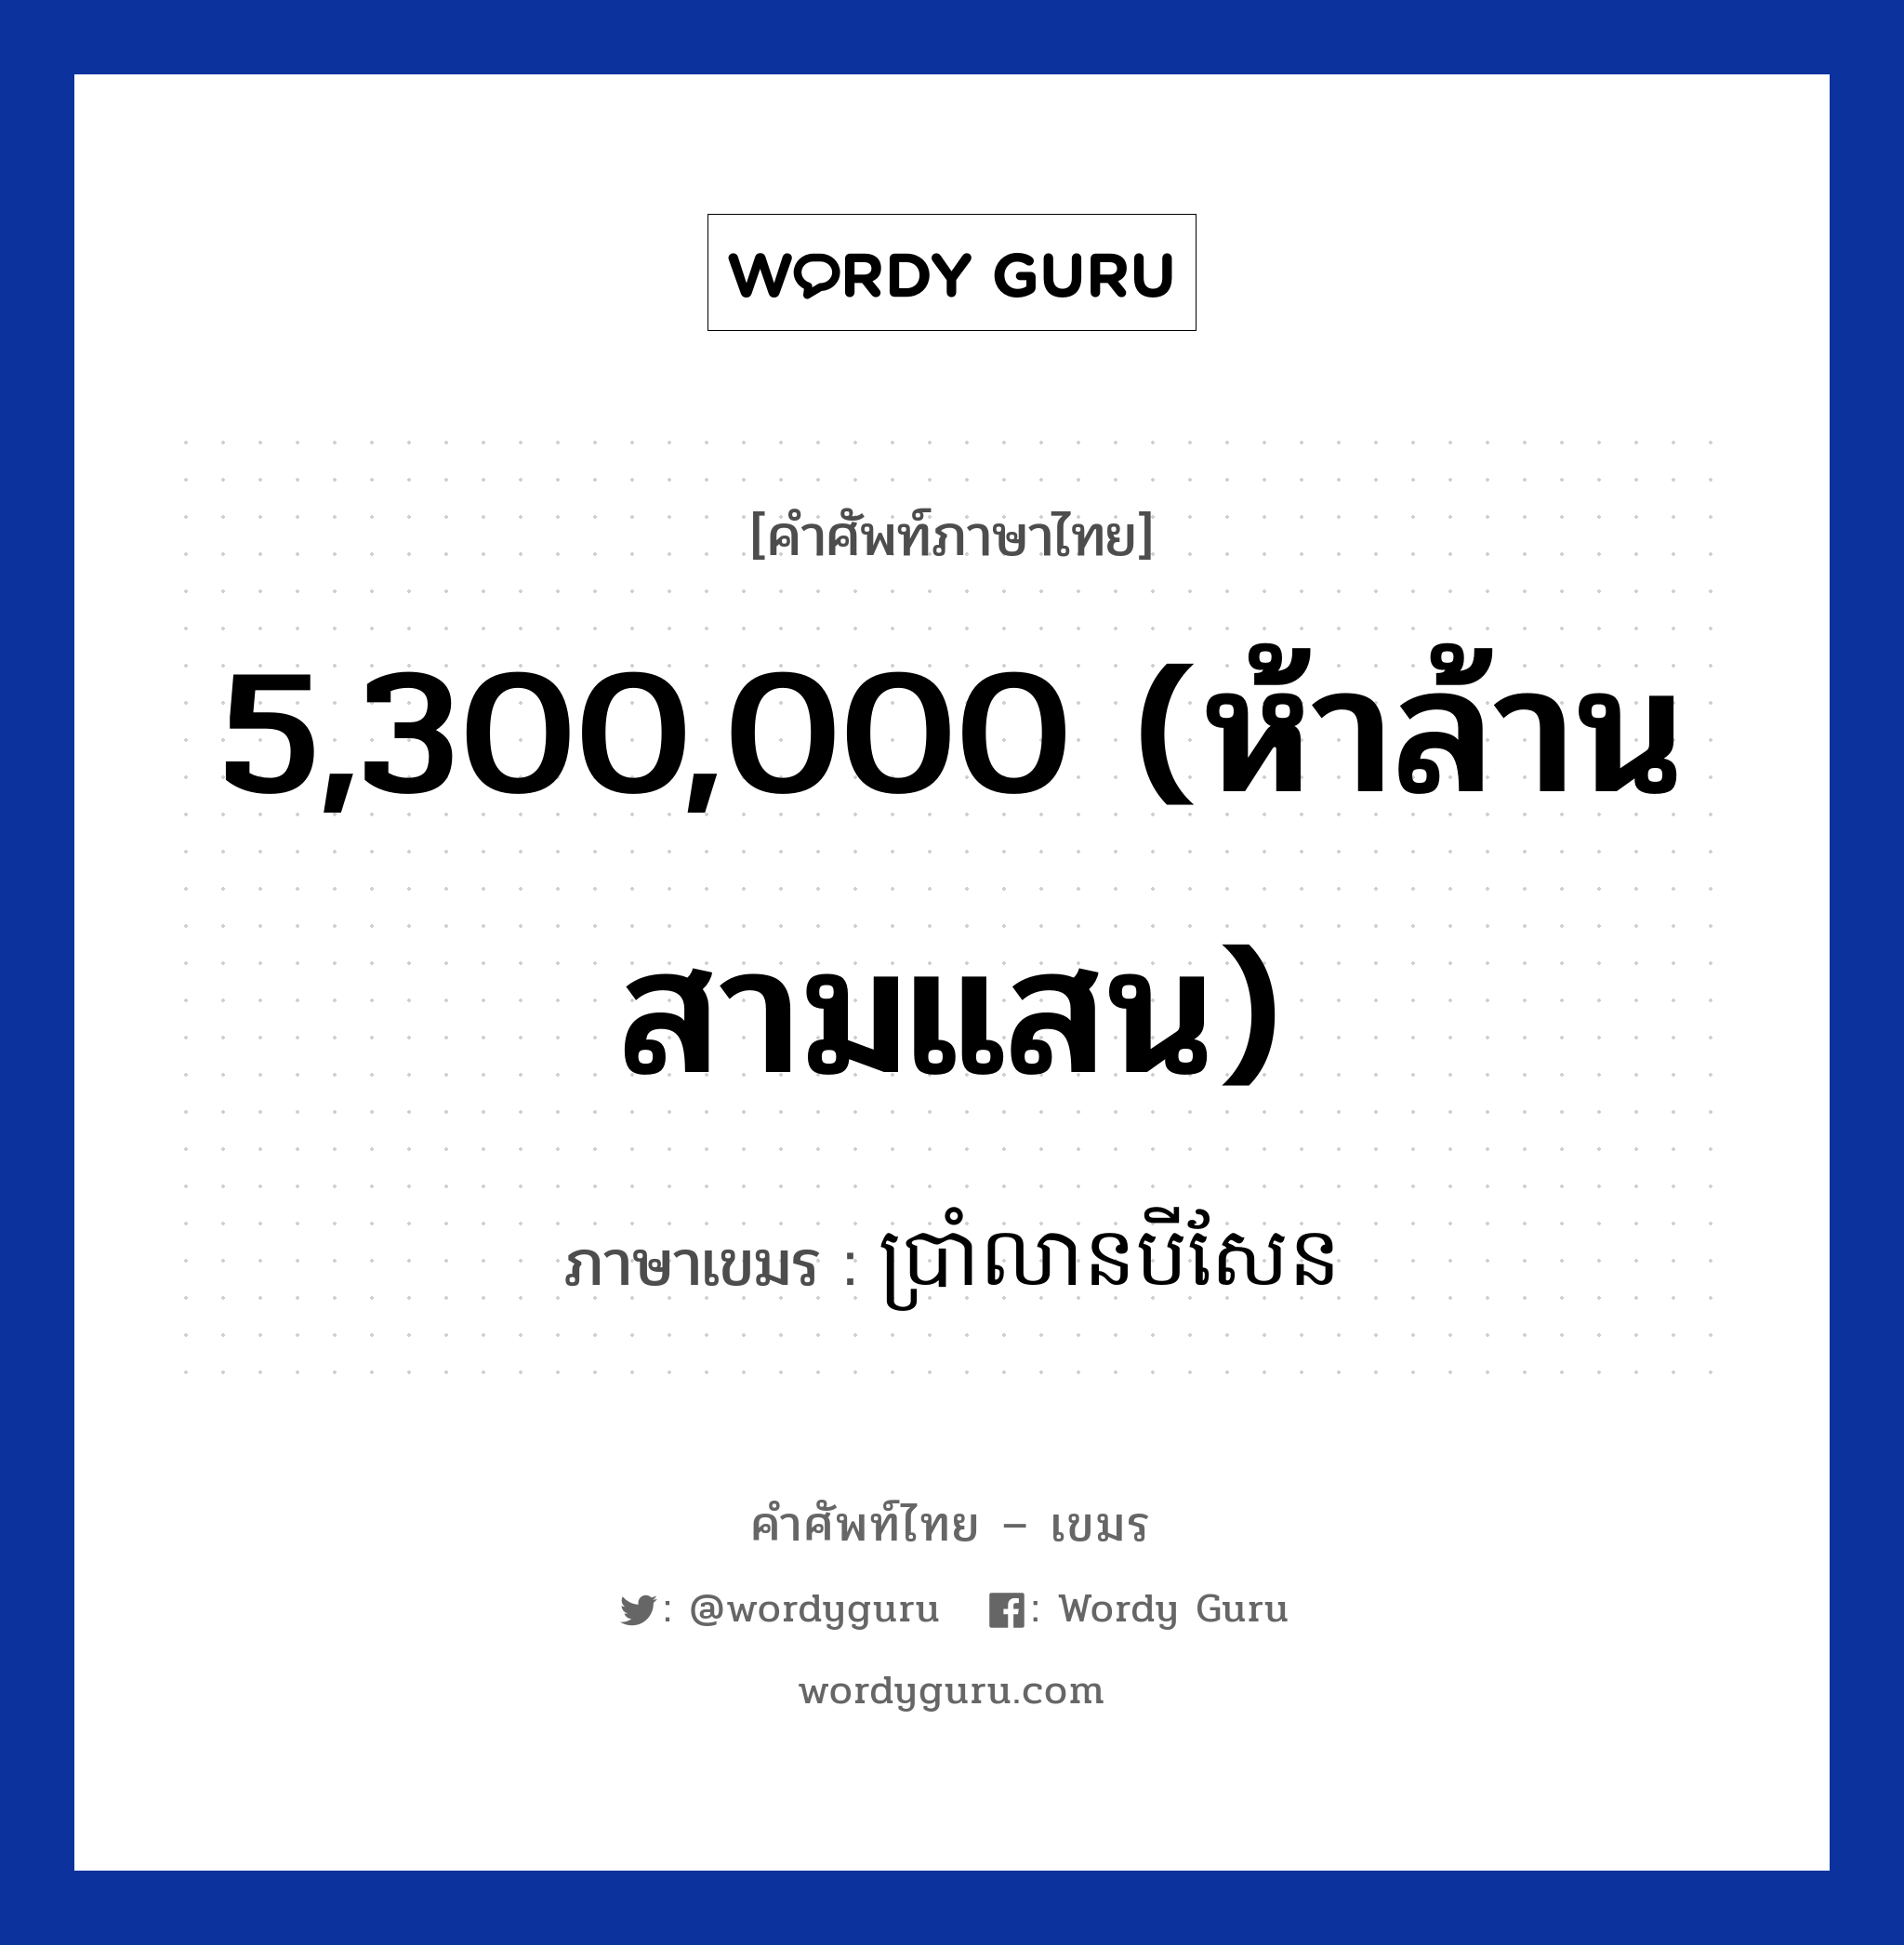 5,300,000 (ห้าล้านสามแสน) ภาษาเขมรคืออะไร, คำศัพท์ภาษาไทย - เขมร 5,300,000 (ห้าล้านสามแสน) ภาษาเขมร ប្រាំលានបីសែន หมวด การนับเลข Bramleanbeisean หมวด การนับเลข